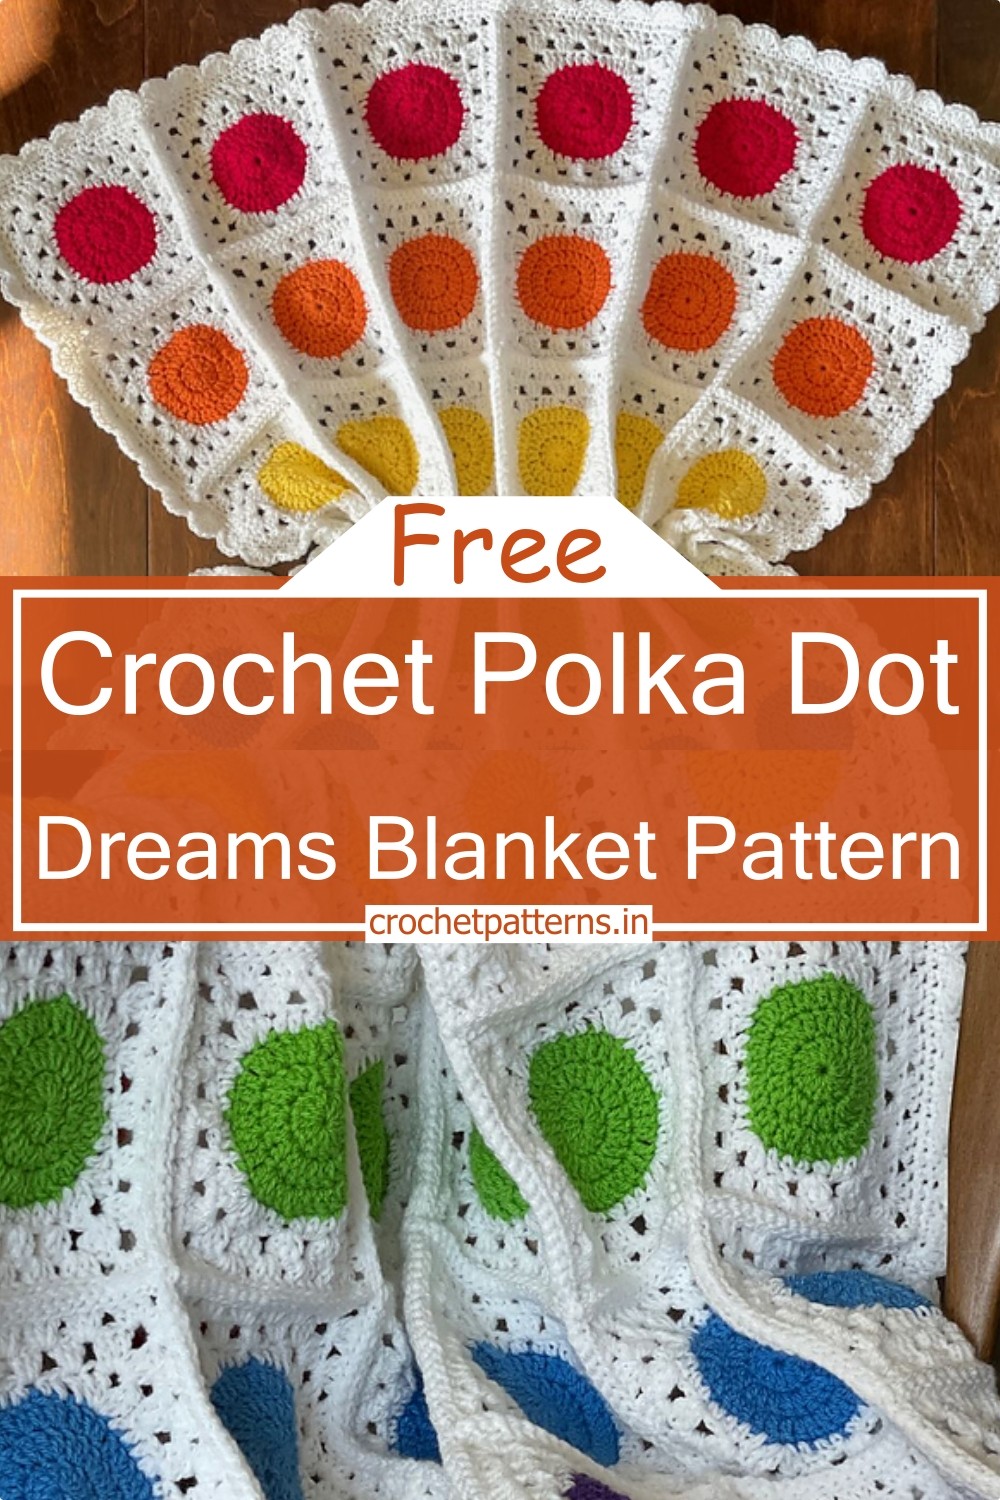 Crochet Polka Dot Dreams Blanket Pattern 